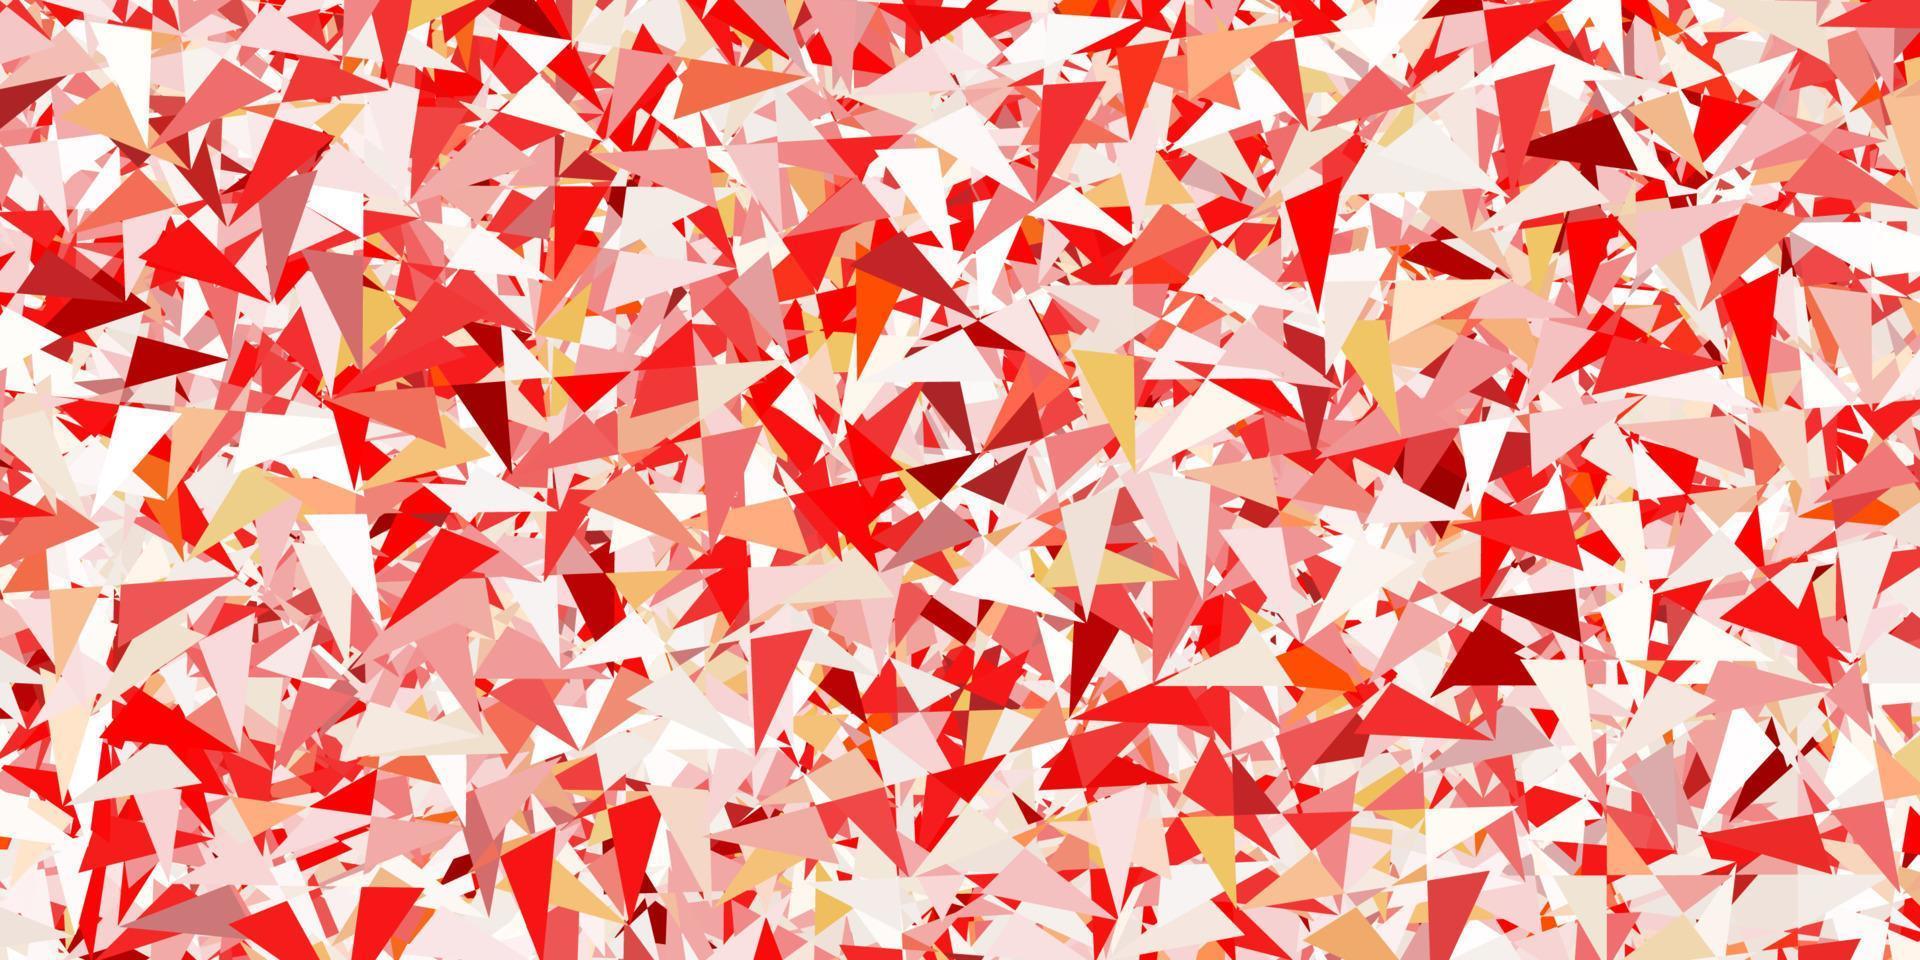 patrón de vector rojo claro con formas poligonales.